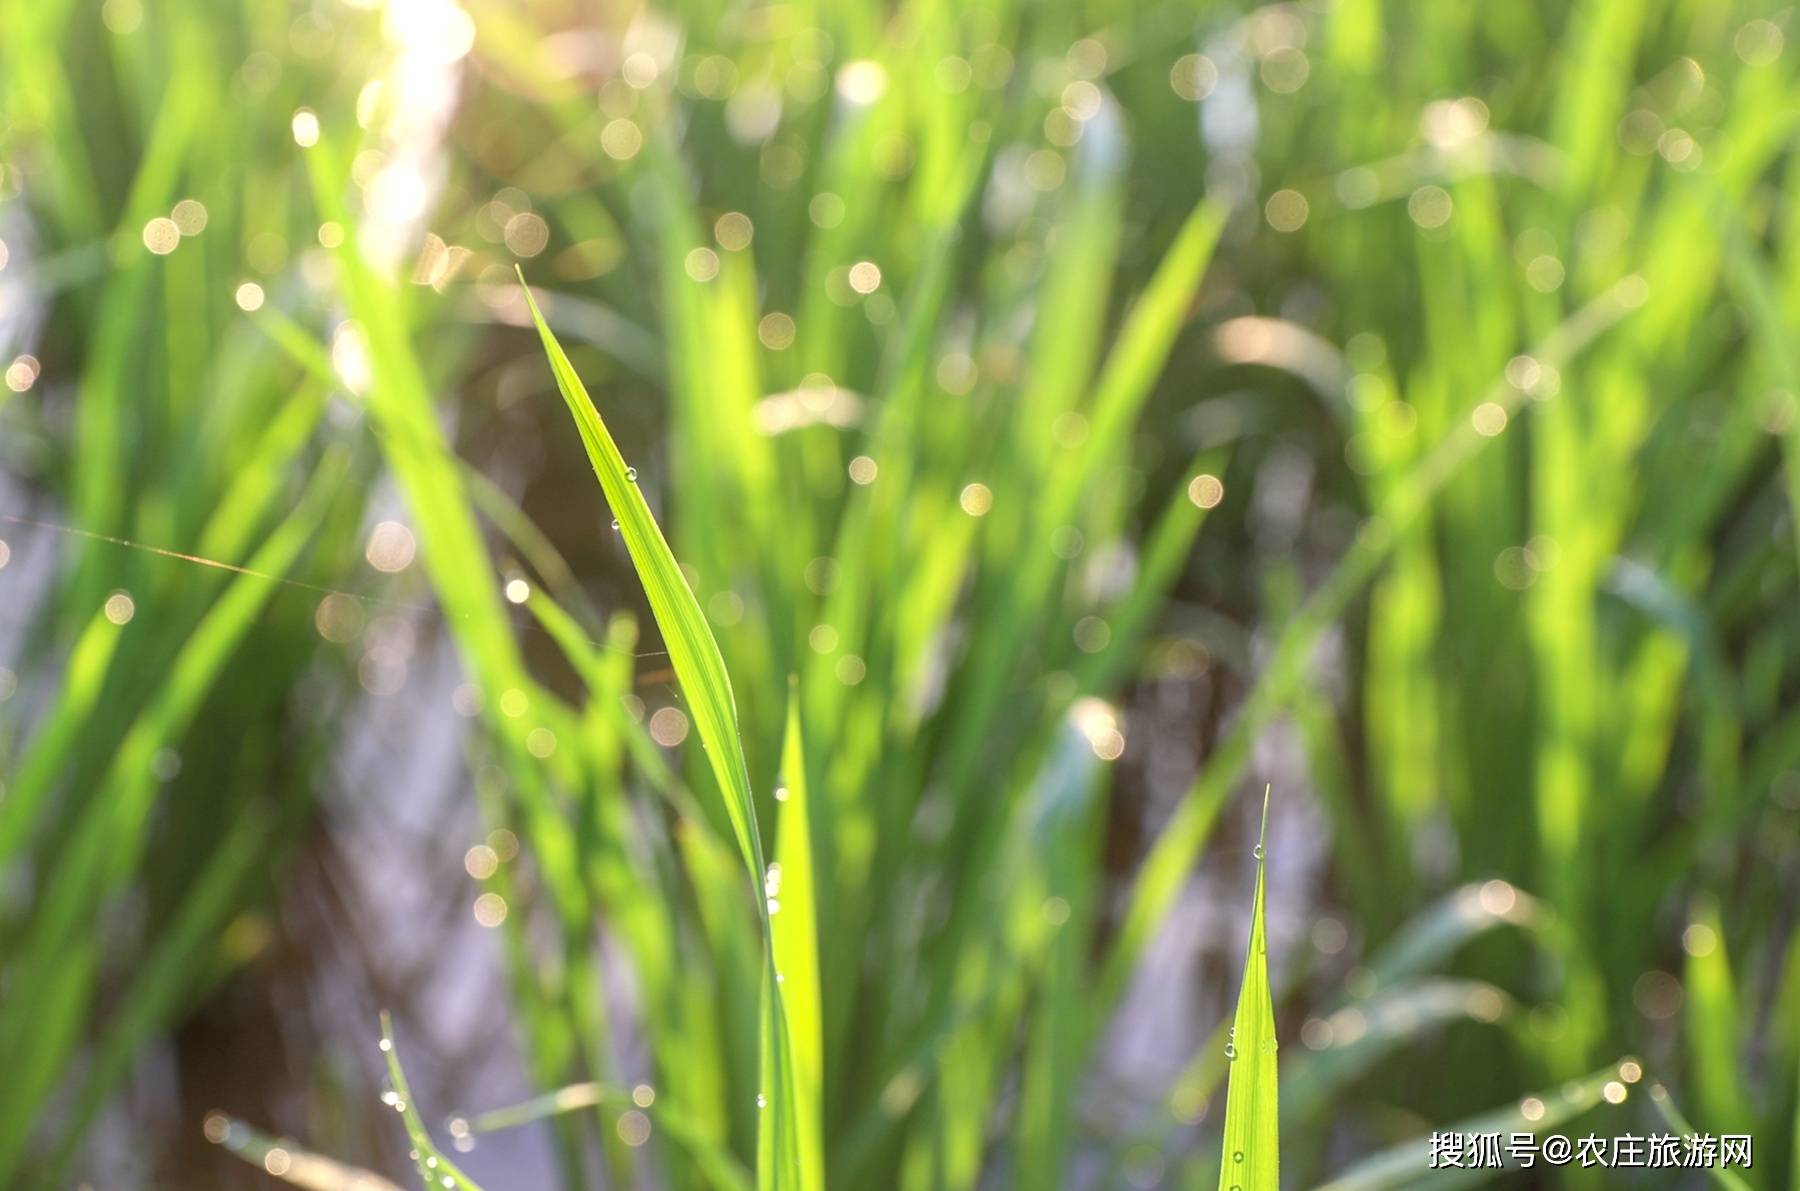 田间的禾苗上挂着一颗颗晶莹的露珠,在阳光下散发着水晶般的光彩